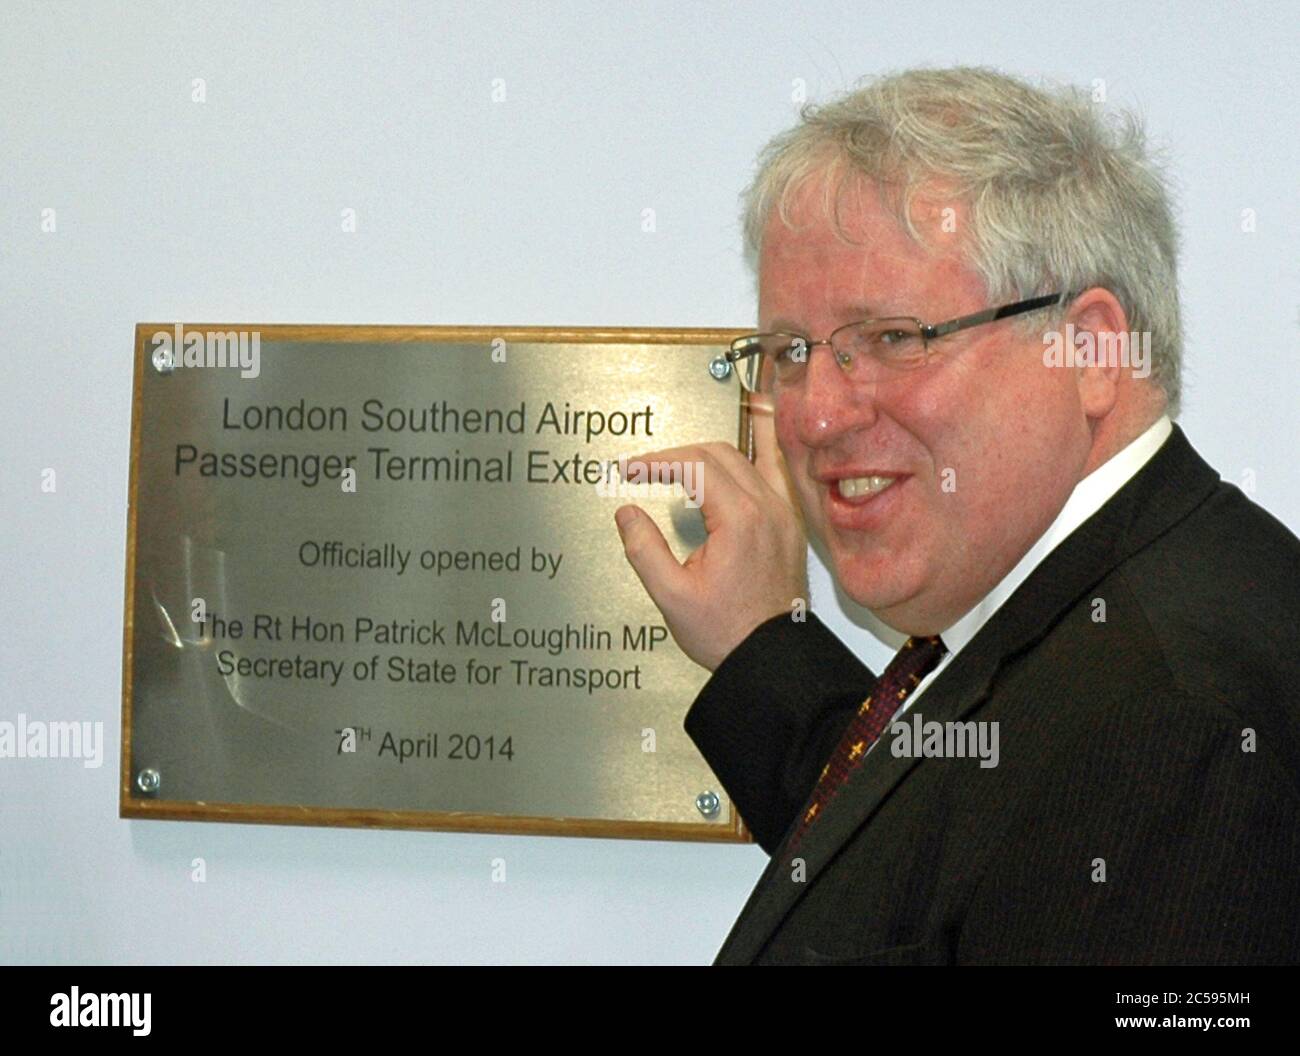 Cerimonia di apertura del nuovo terminal dell'aeroporto Southend di Londra, aprile 2014 Foto Stock